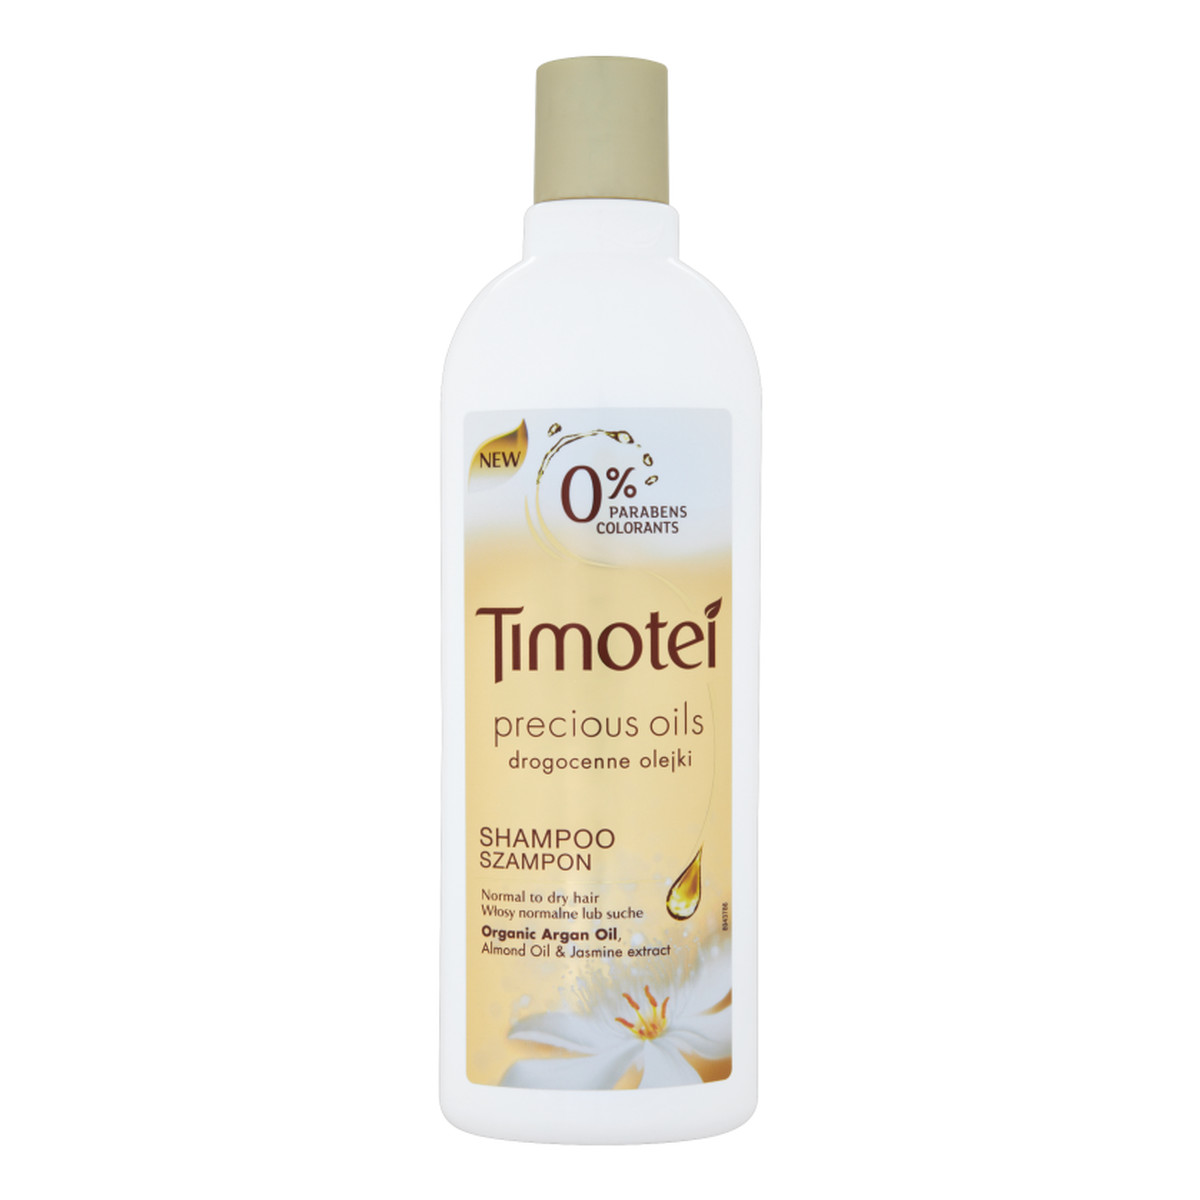 szampon do włosów timothy z drogocenymi olejkami